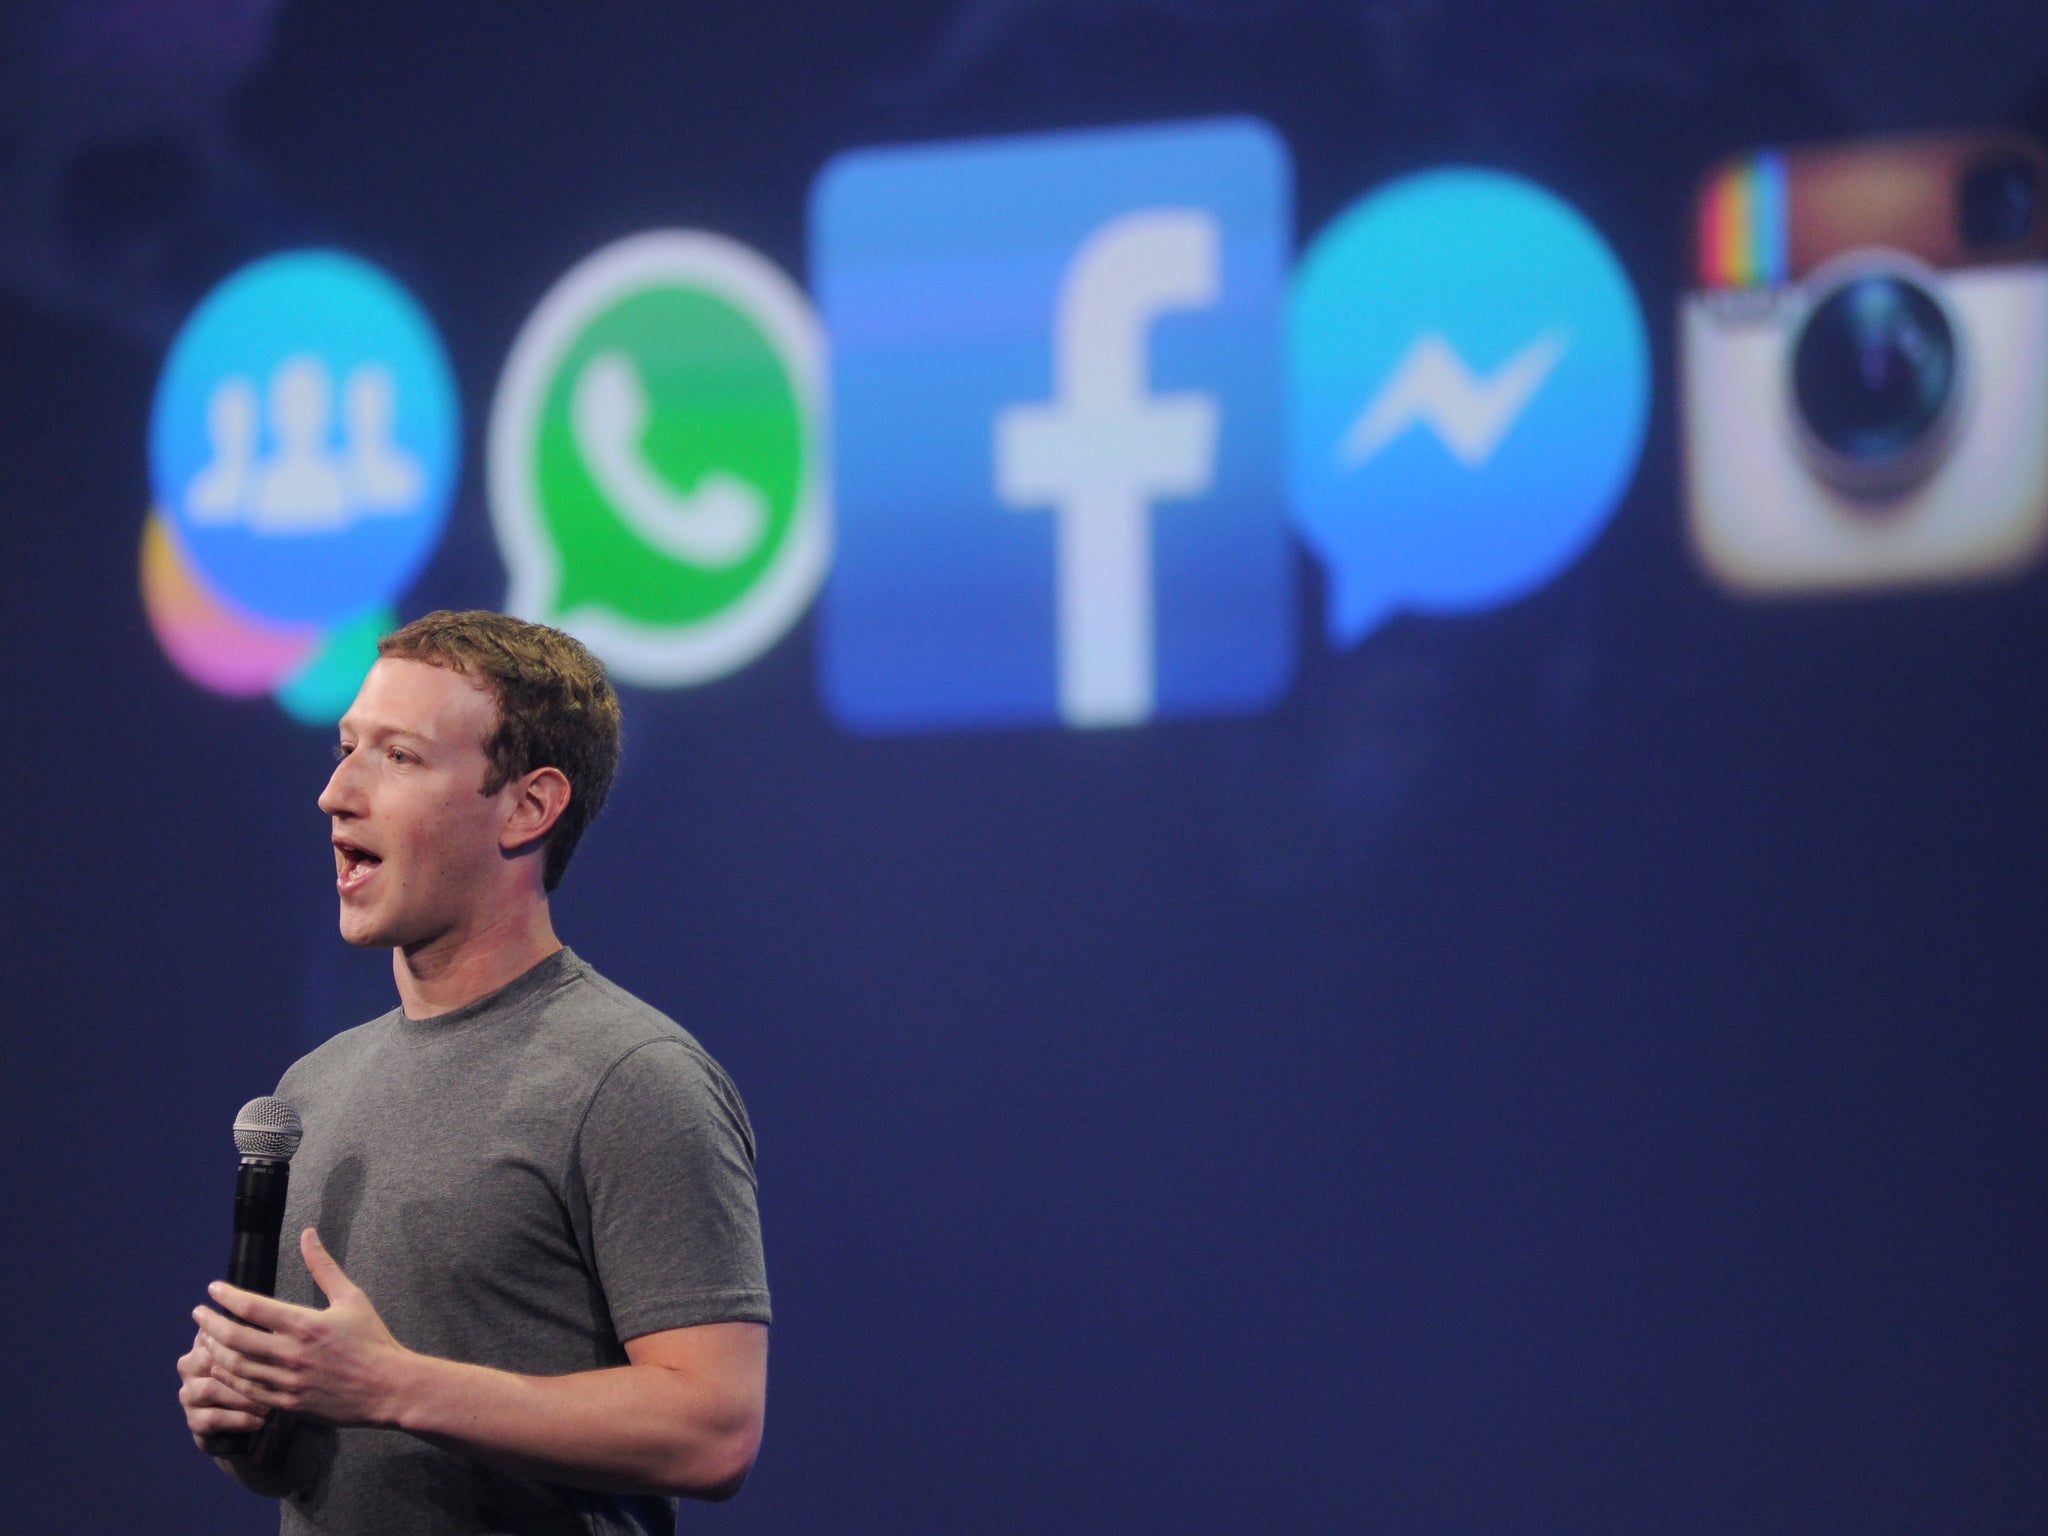 El CEO de Facebook, Mark Zuckerberg, habla en la cumbre F8 en San Francisco, California, el 25 de marzo de 2015. Zuckerberg presentó una nueva plataforma de mensajería en el evento.